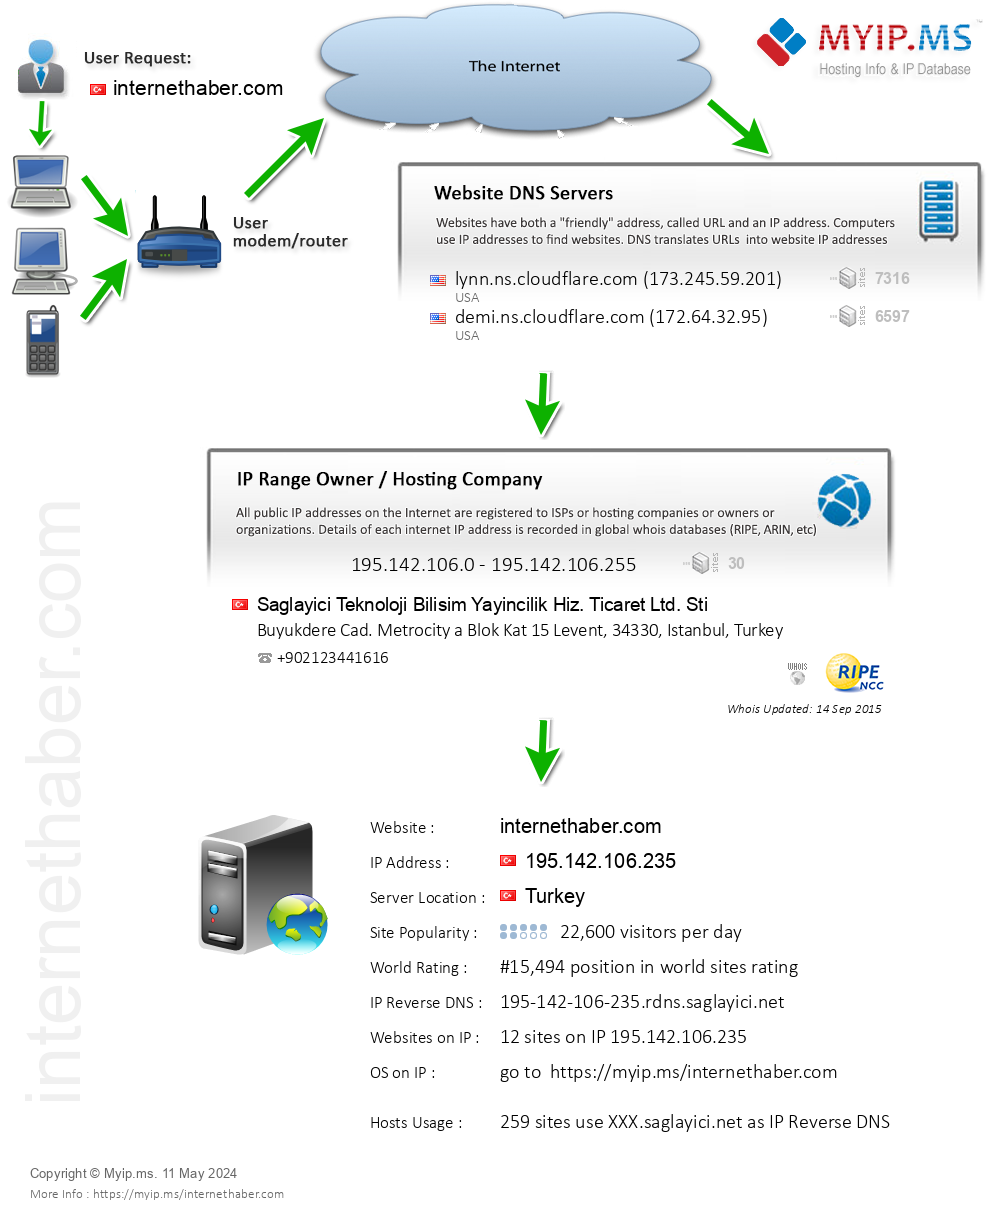 Internethaber.com - Website Hosting Visual IP Diagram